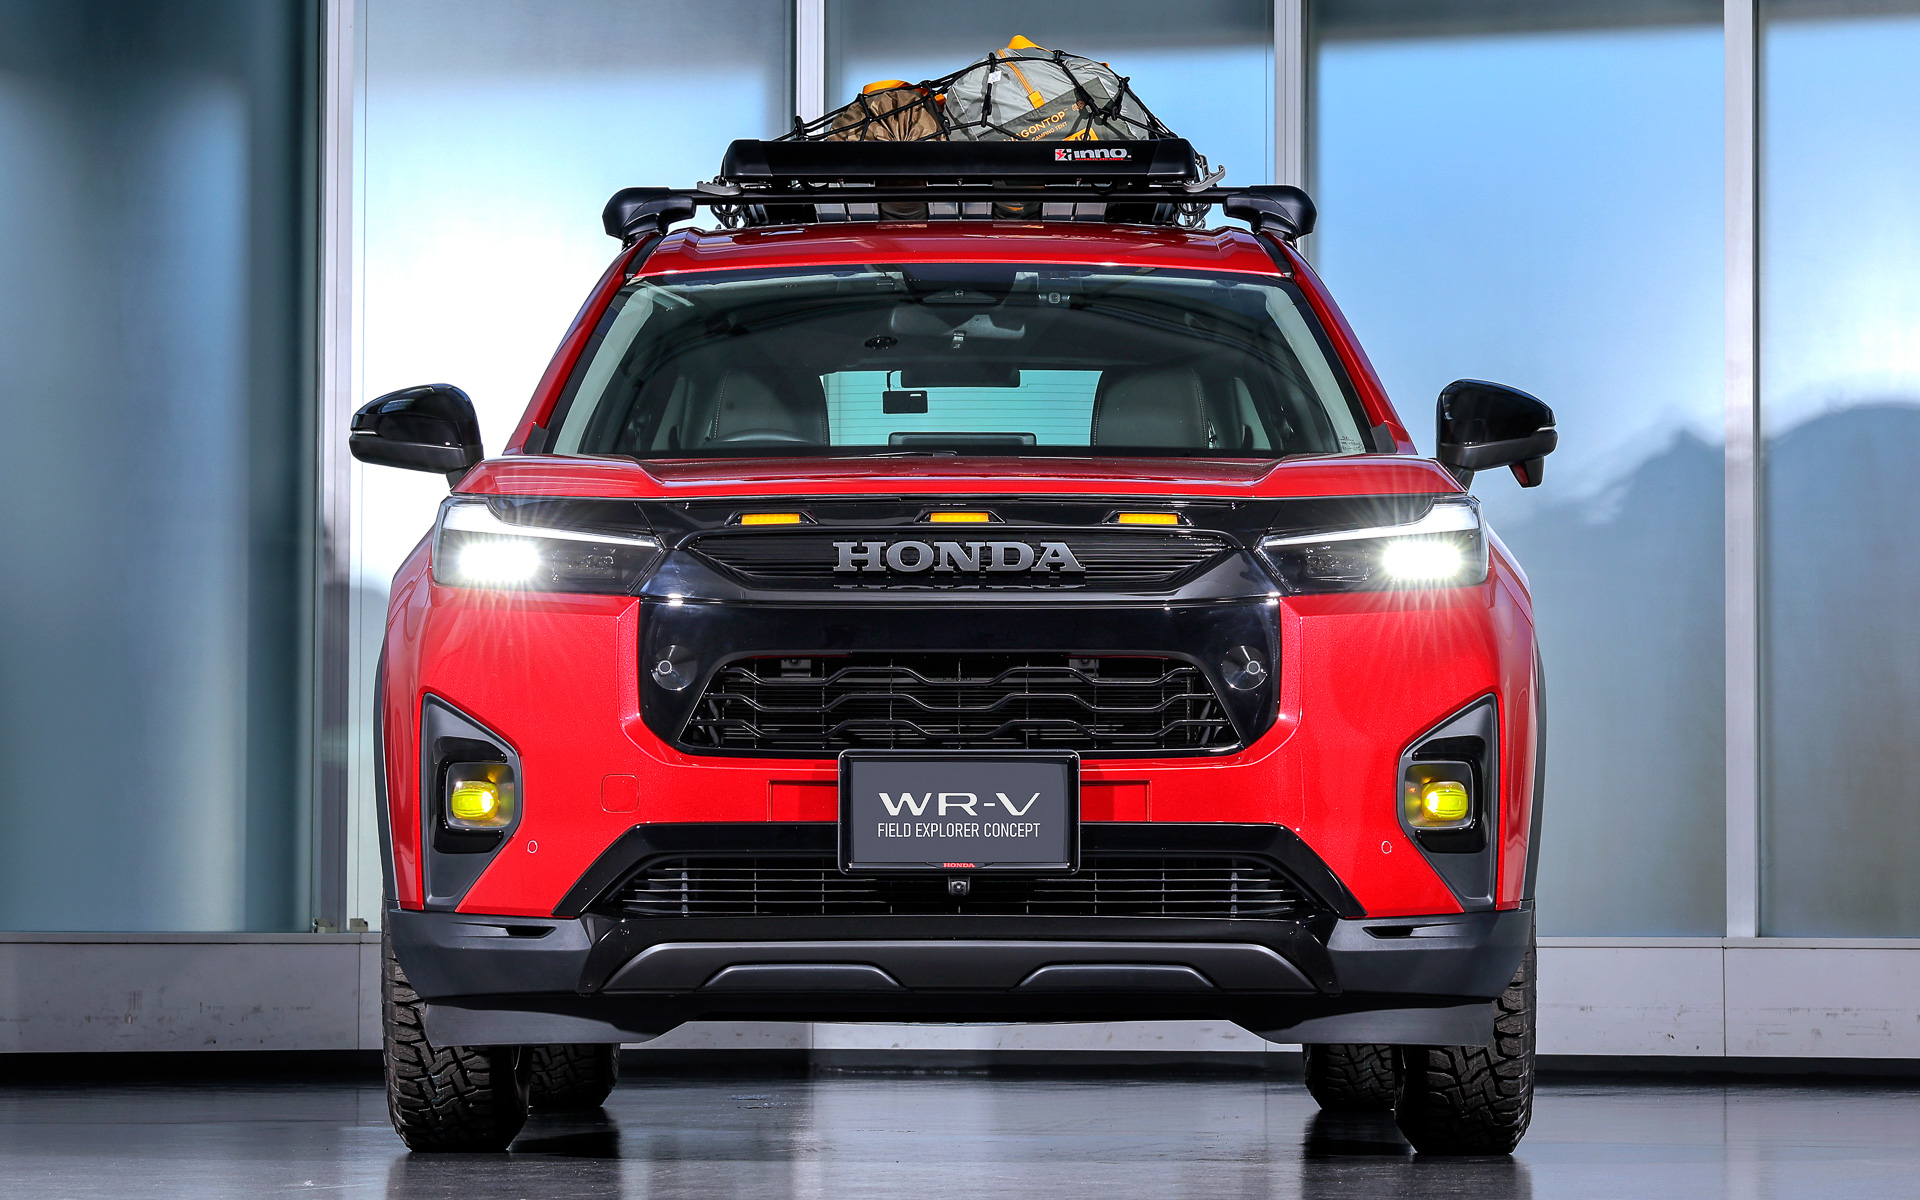 Honda WR-V bản độ chính hãng cho người thích phượt bằng SUV nhỏ: Lốp bự, cản hầm hố, giá nóc chở thêm được nhiều đồ- Ảnh 3.